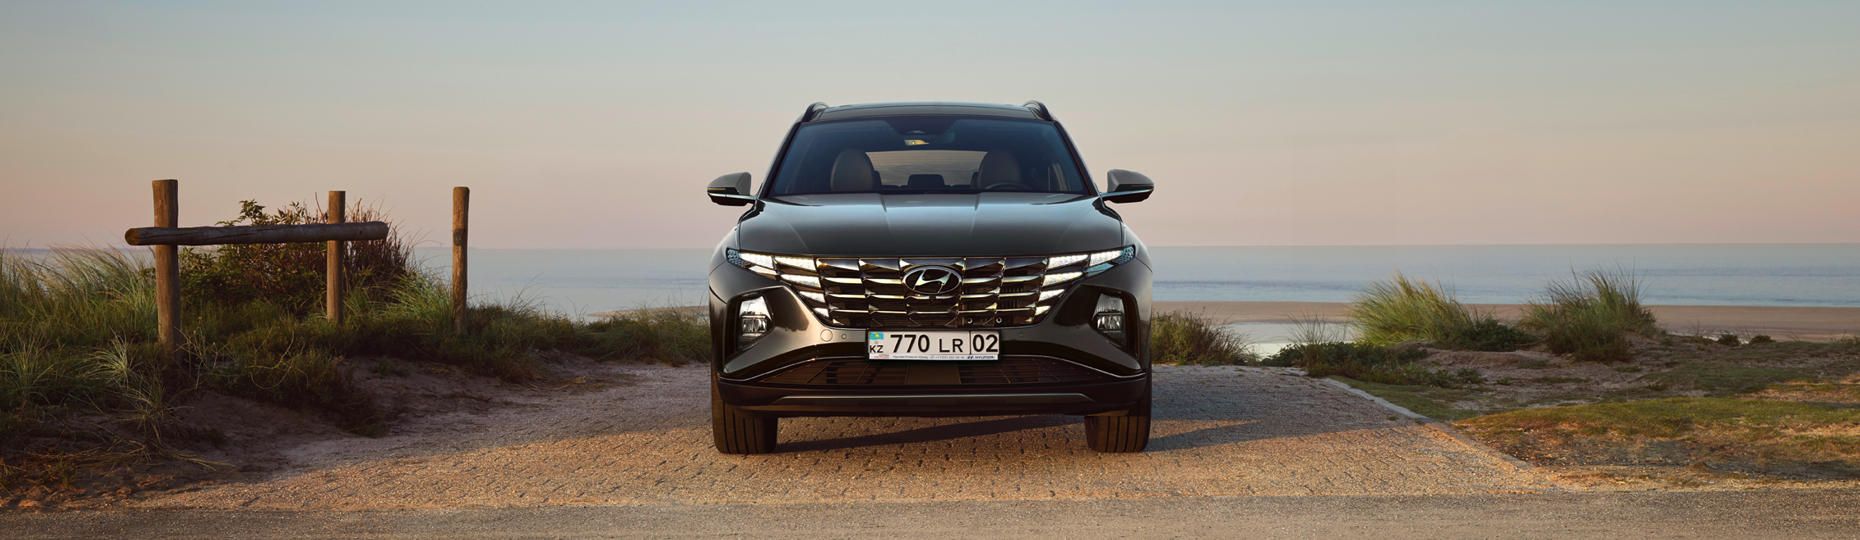 Жаңа Hyundai Tucson жайлылығы | Алматы қаласындағы ресми дилер